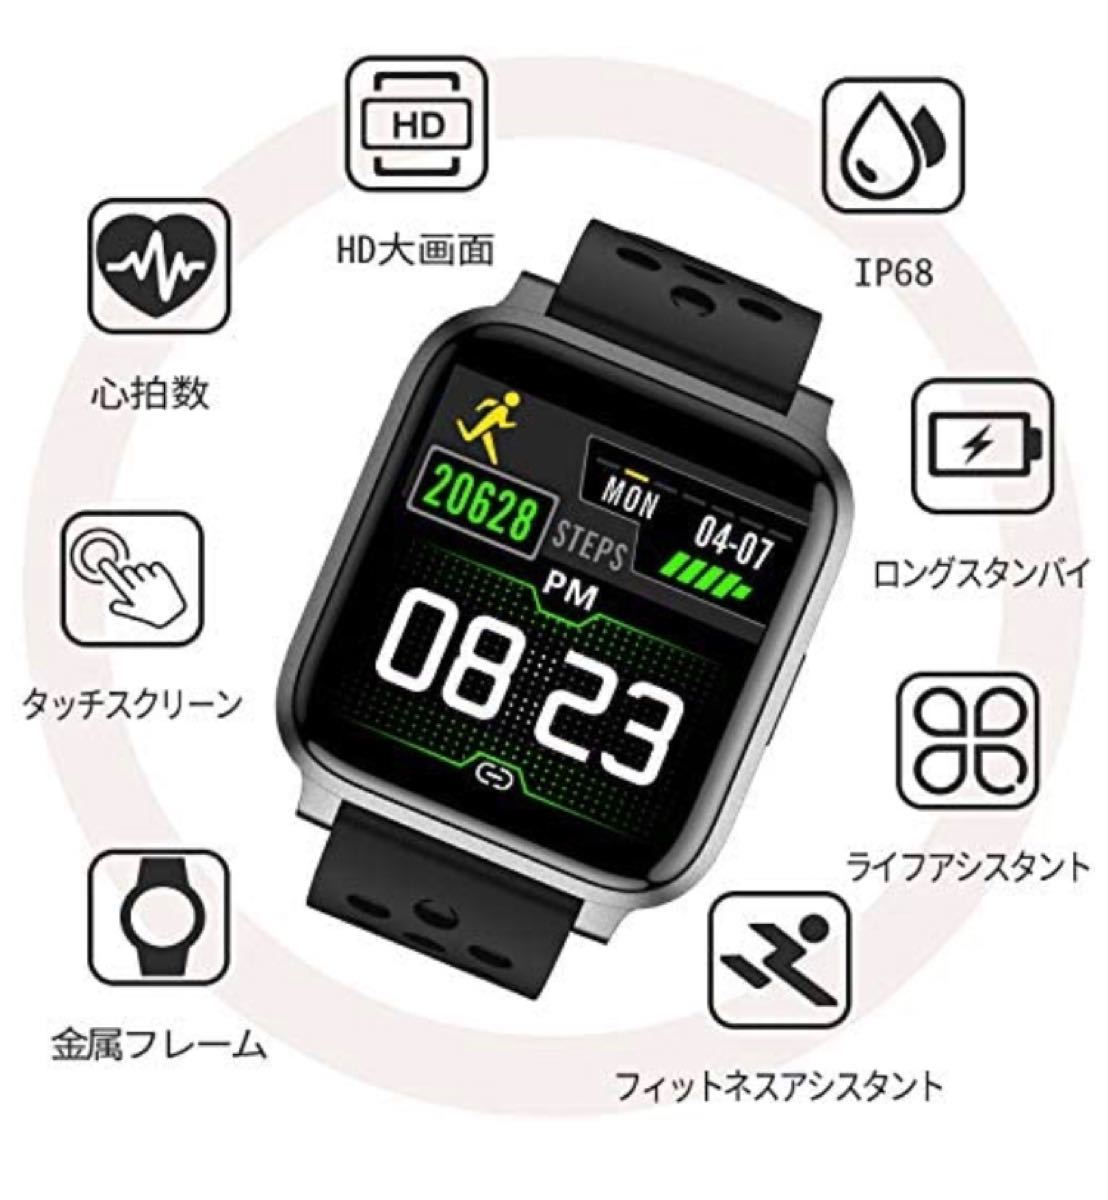  天気予報&Bluetooth5.0スマートウォッチ】最新smart watch 活動量計 心拍計 